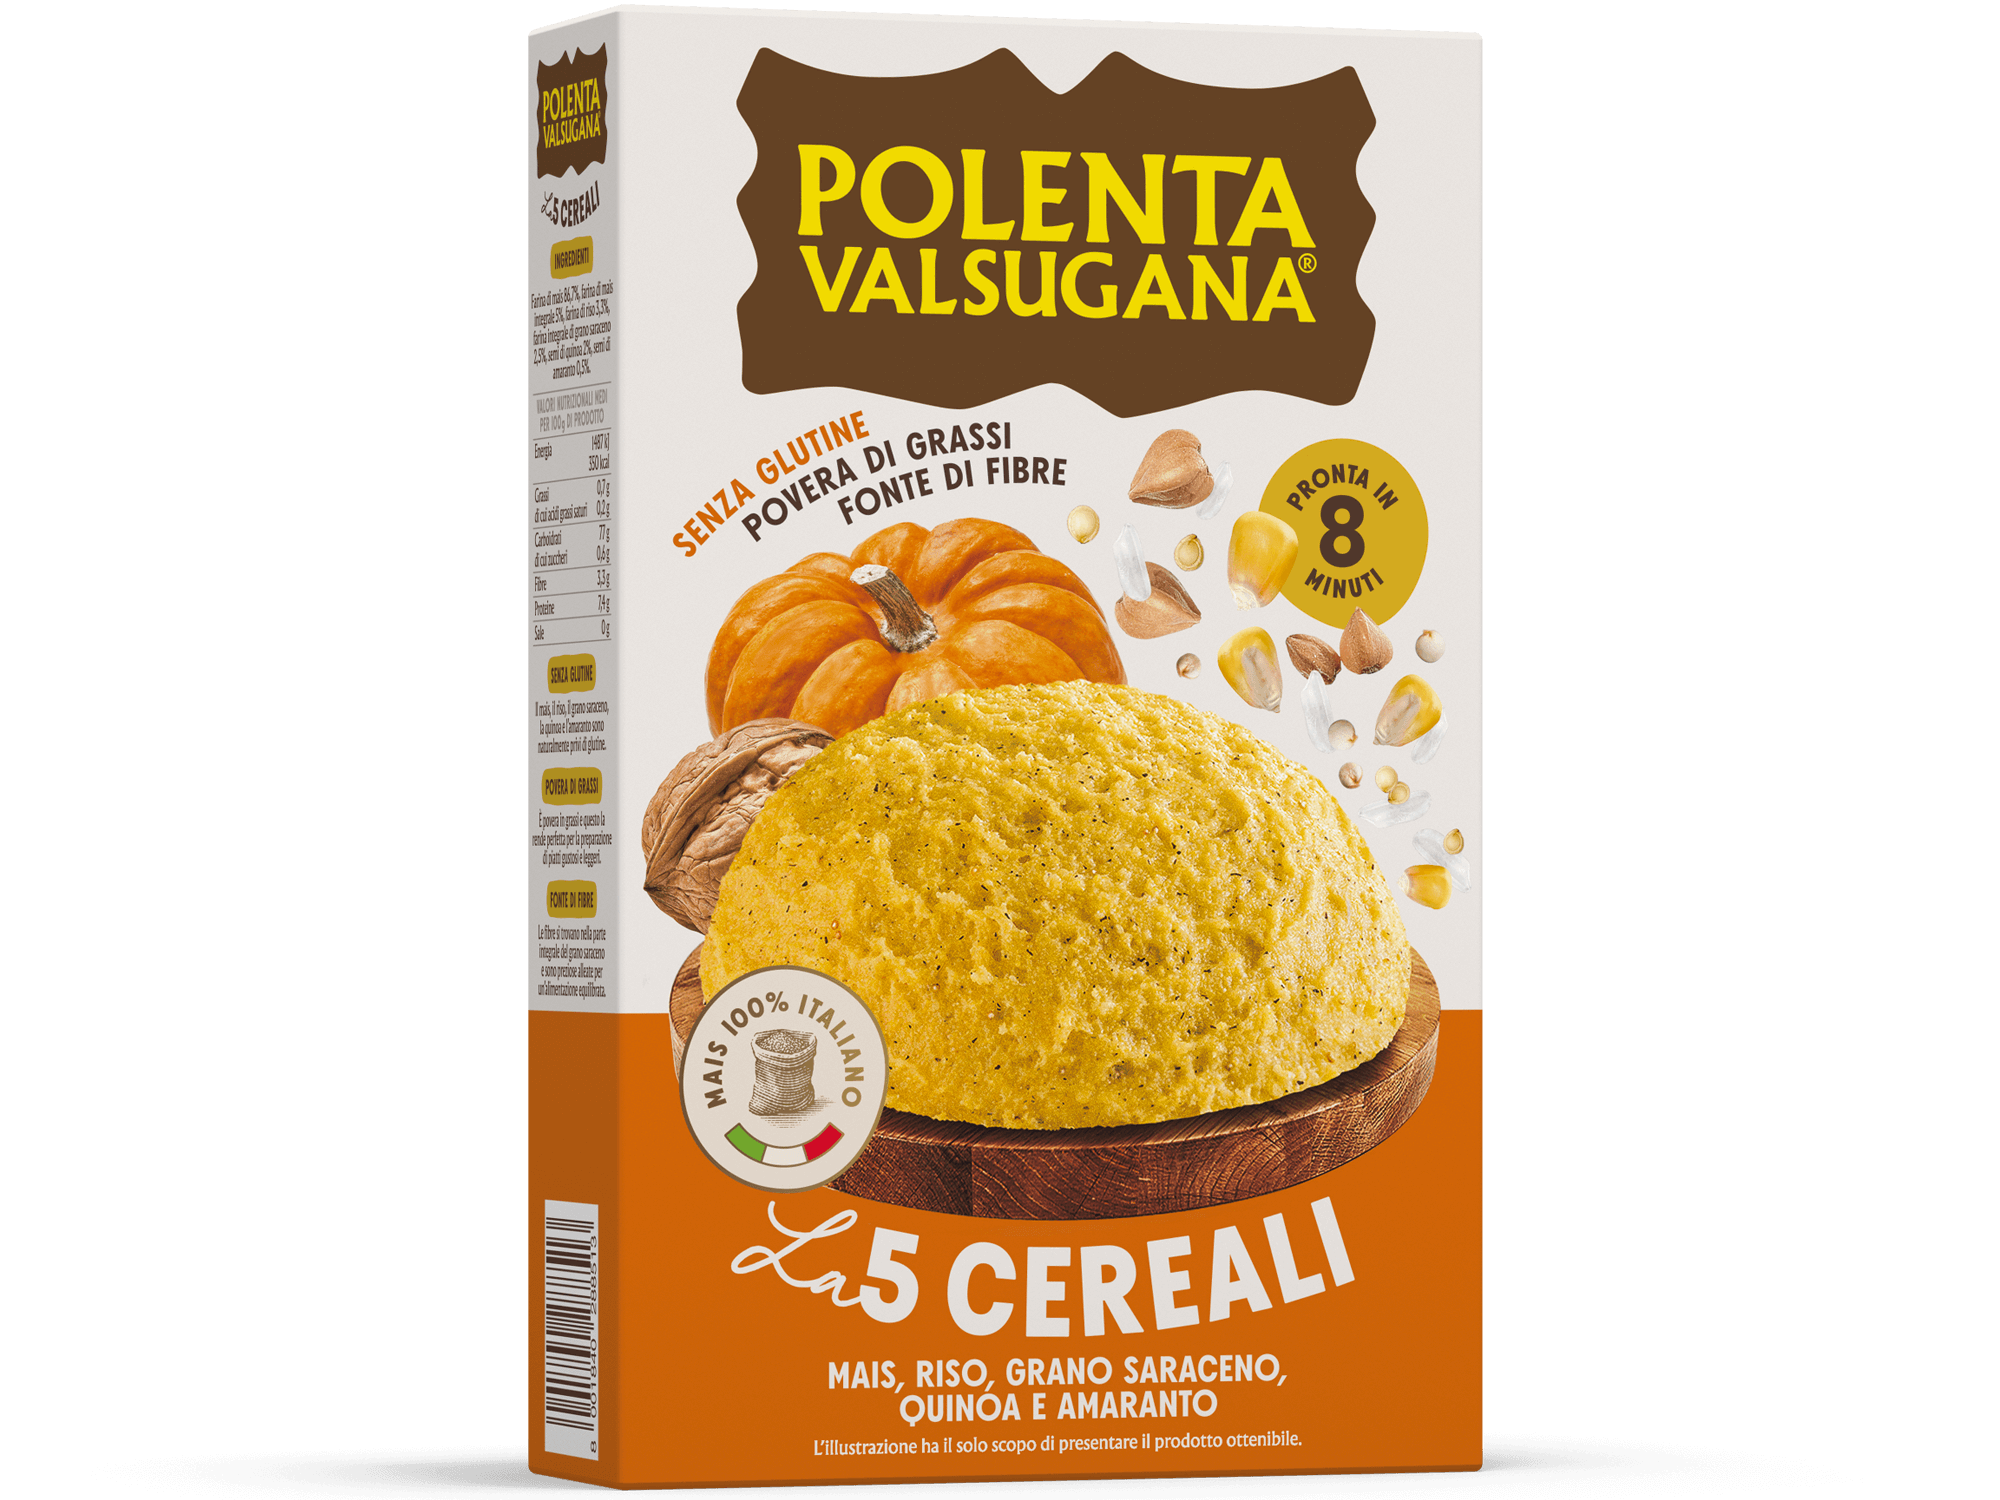 Polenta con riso, grano saraceno, quinoa e amaranto - Polenta Valsugana